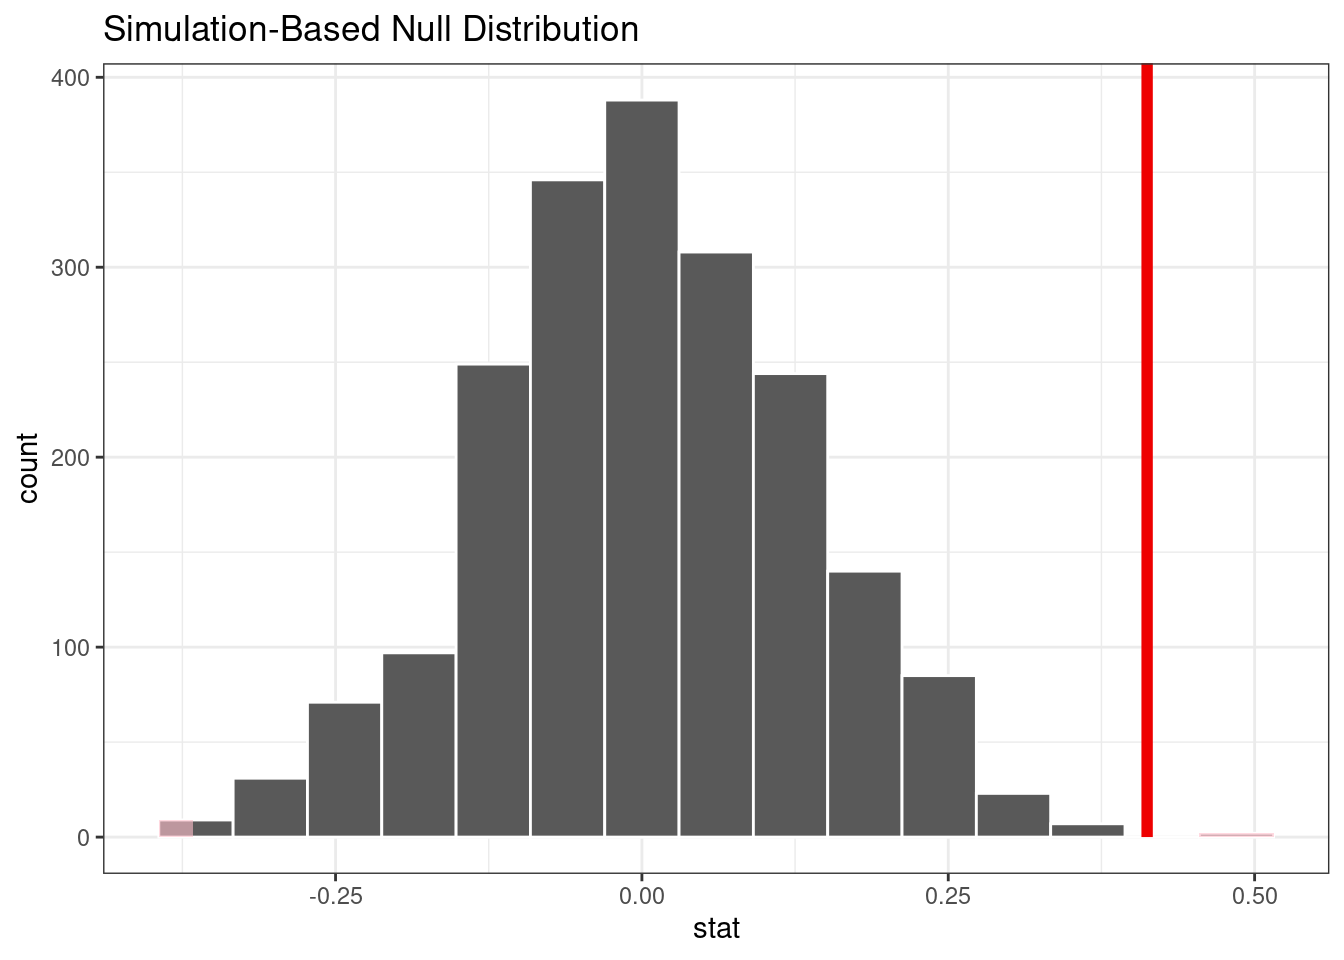 La distribución empírica del estadístico de prueba bajo la hipótesis nula. La línea vertical indica la estadística de prueba observada y está muy alejada de la corriente principal de la distribución.